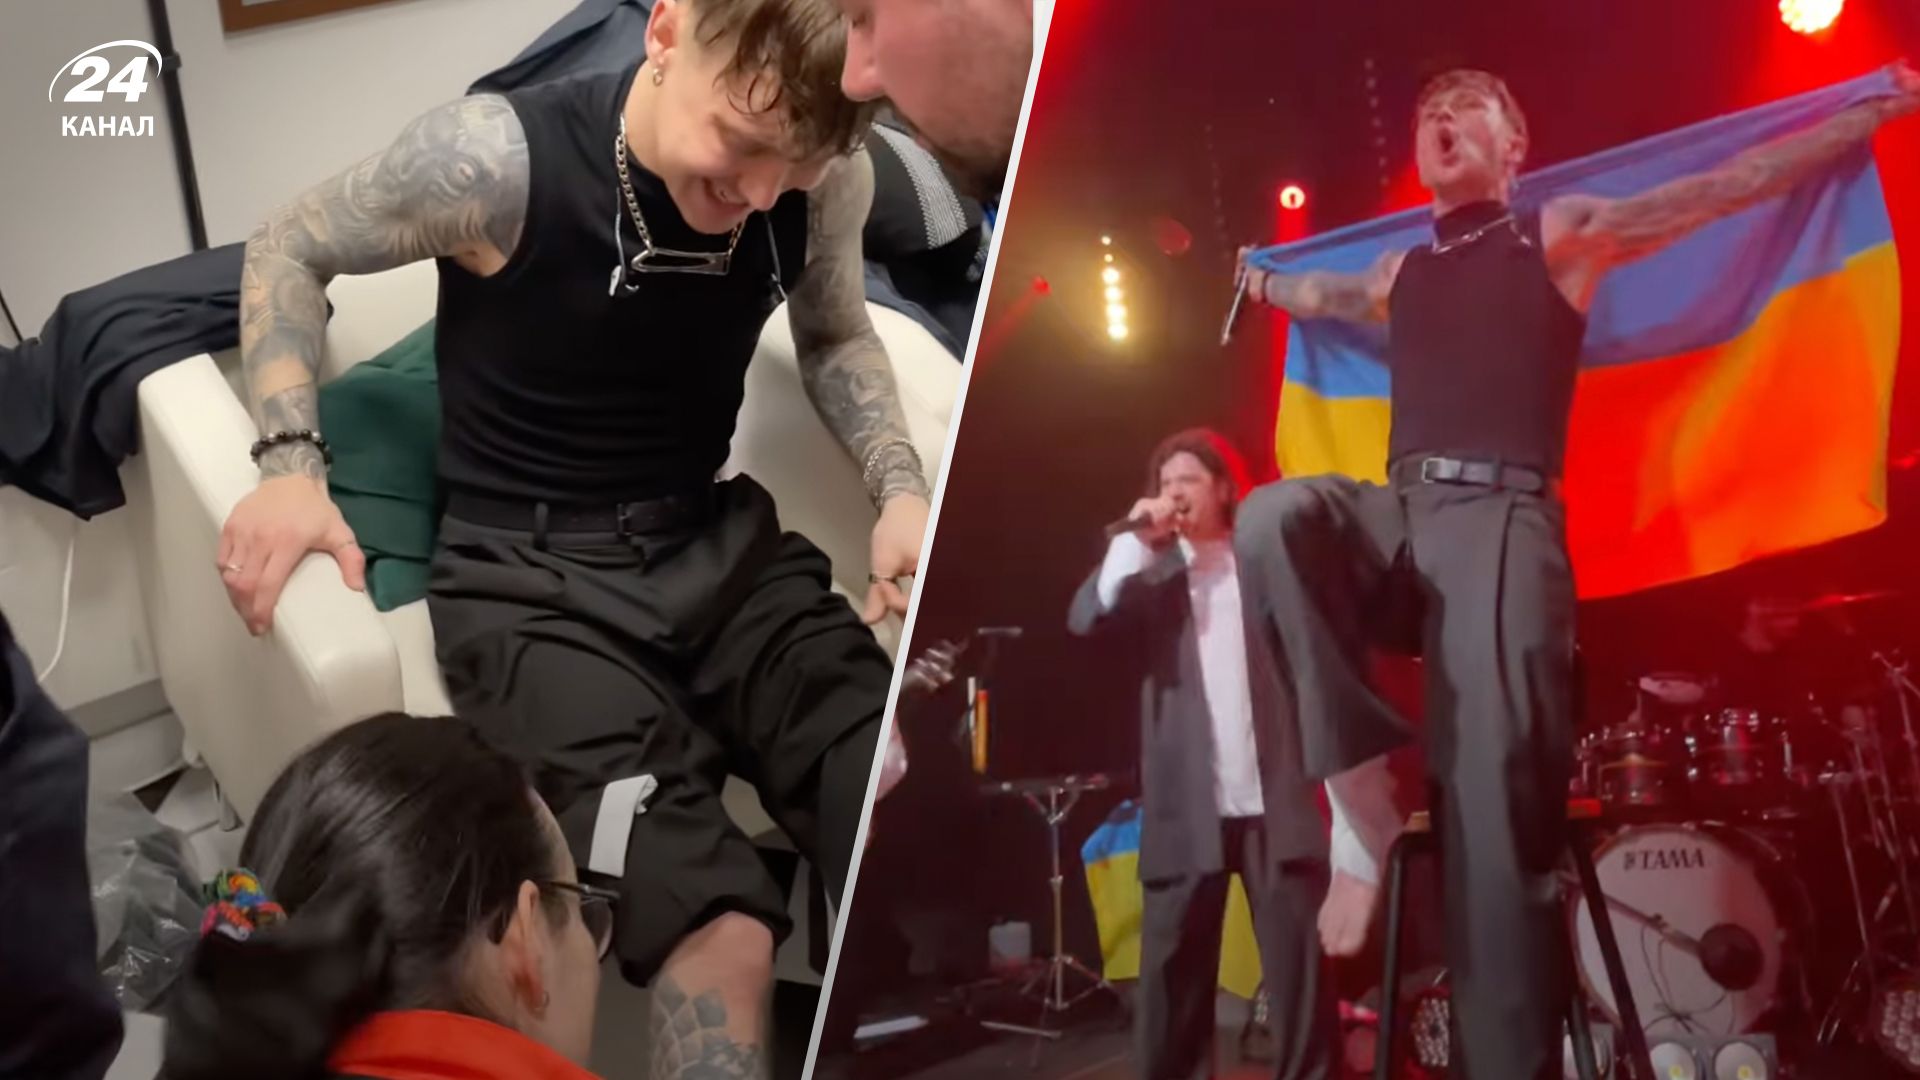 Артем Пивоваров отримав травму ноги під час концерту в Польщі